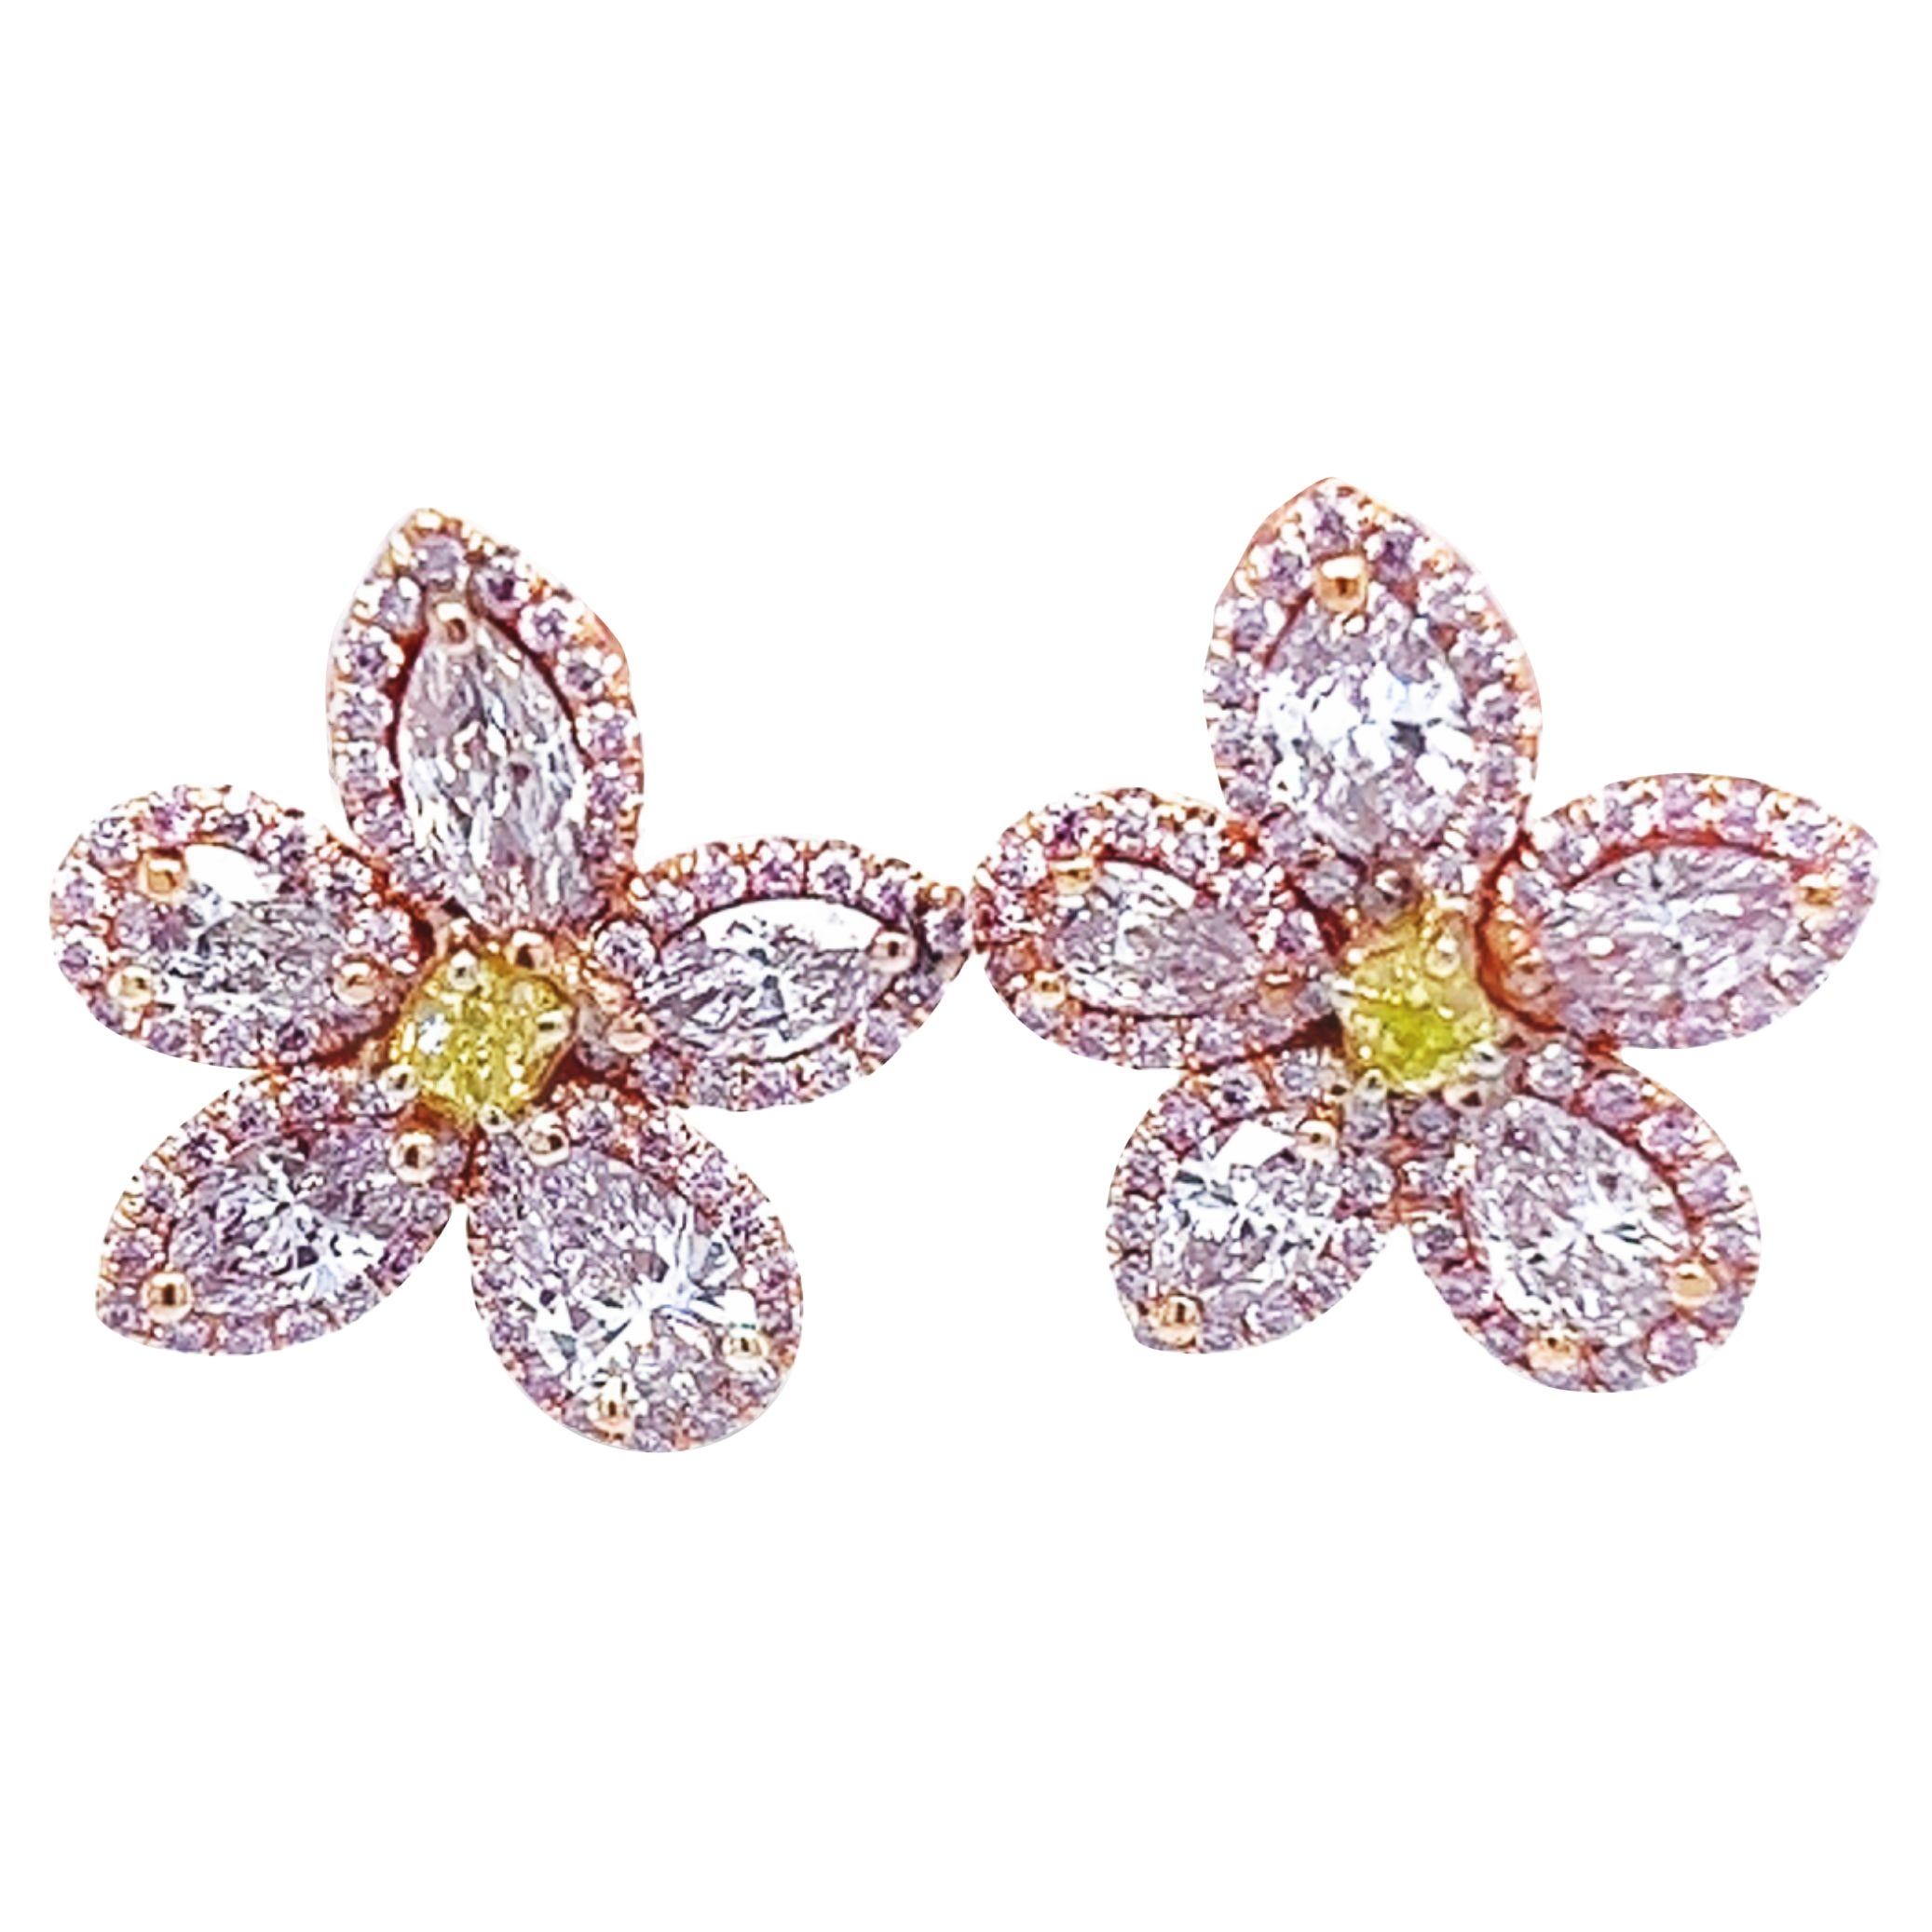 David Rosenberg, clous d'oreilles fleur en diamants roses et verts de 2,35 carats certifiés GIA